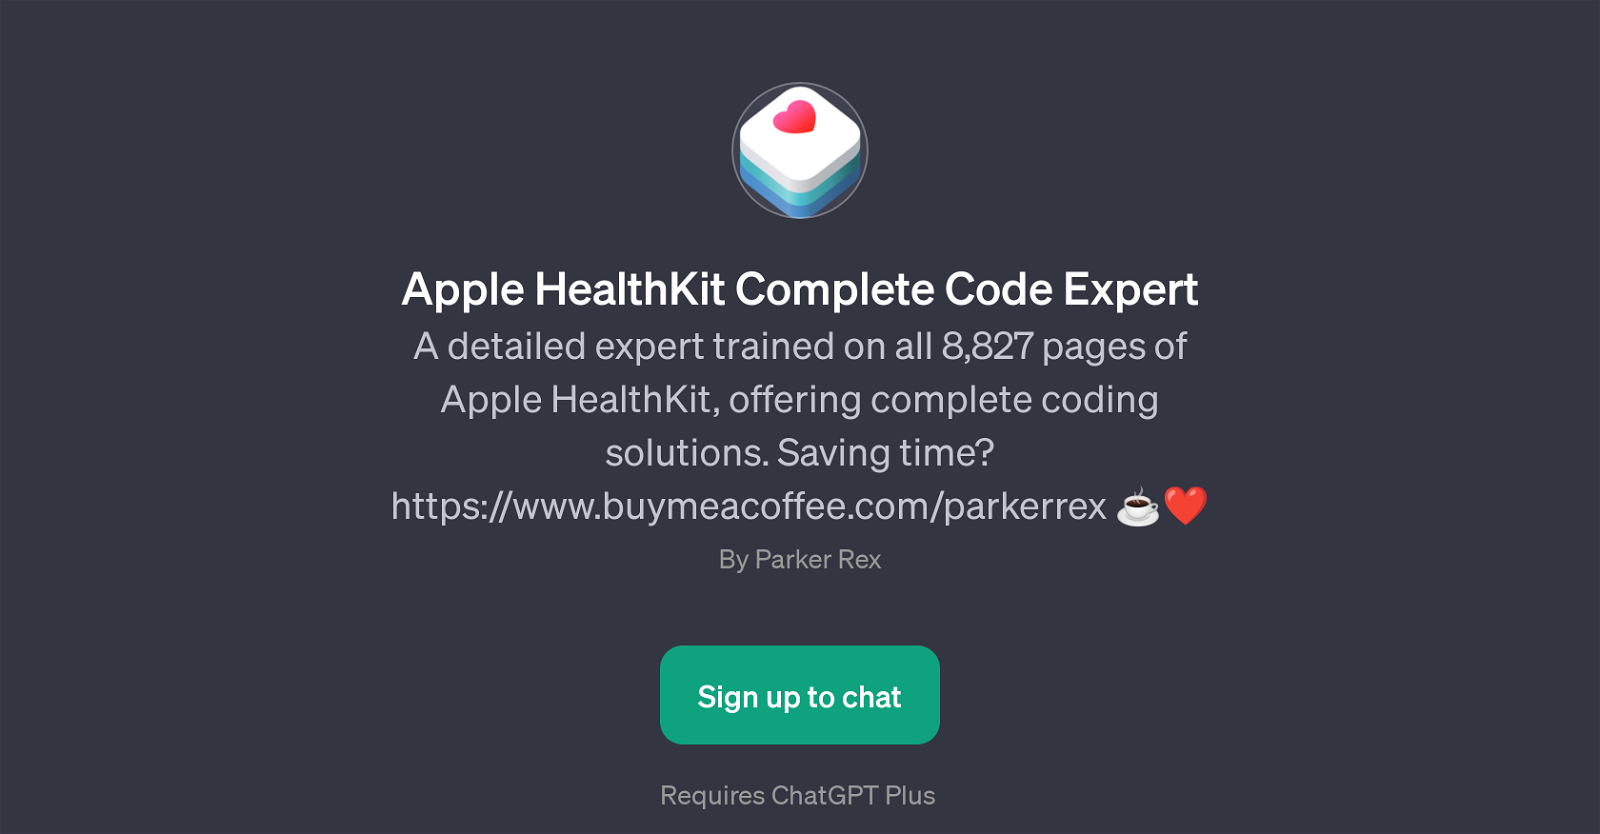 Apple HealthKit Complete Code Expert website